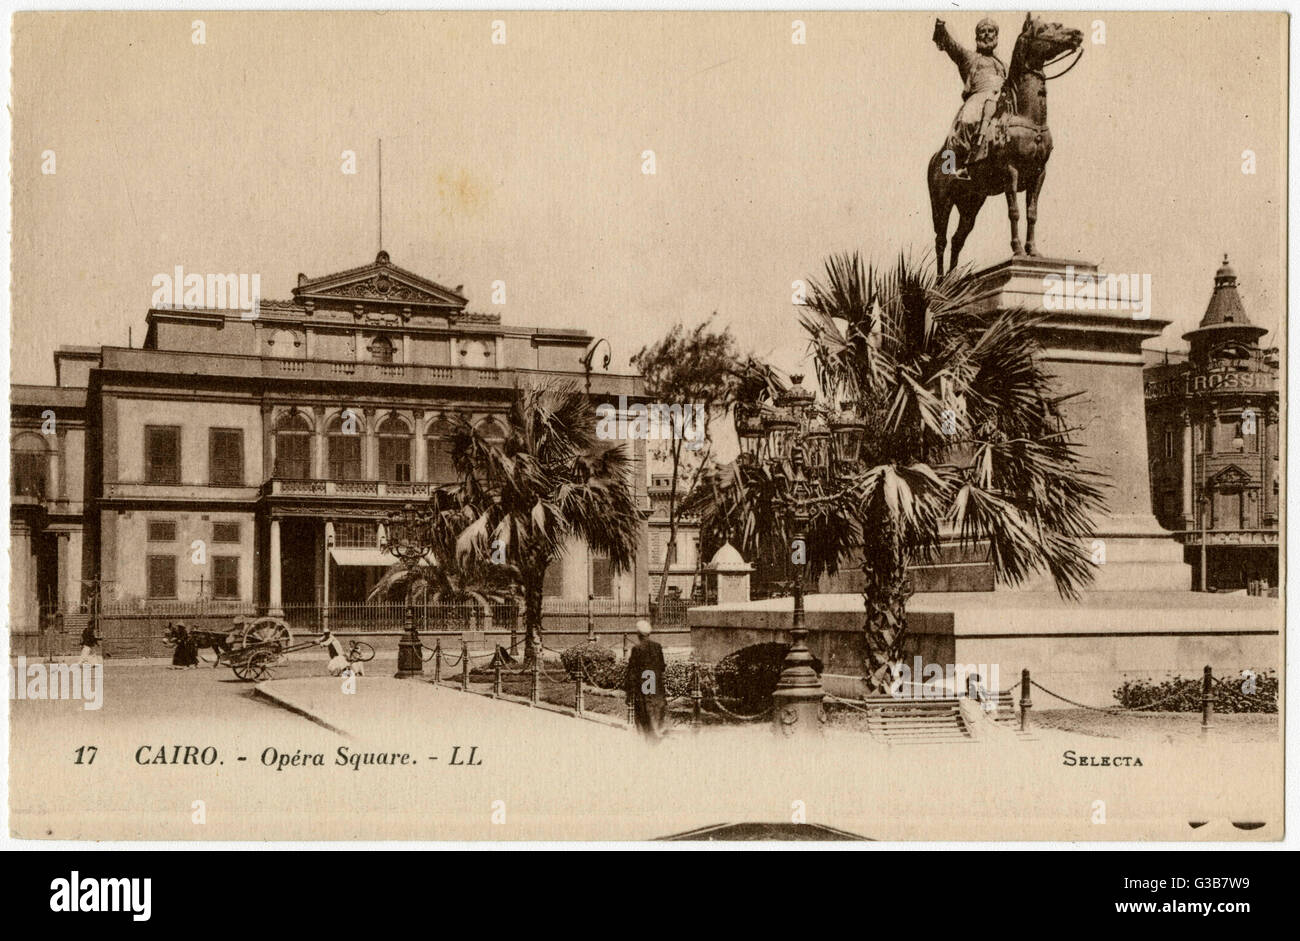 La Opera House di Opera Square, il Cairo. Data: circa 1910 Foto Stock